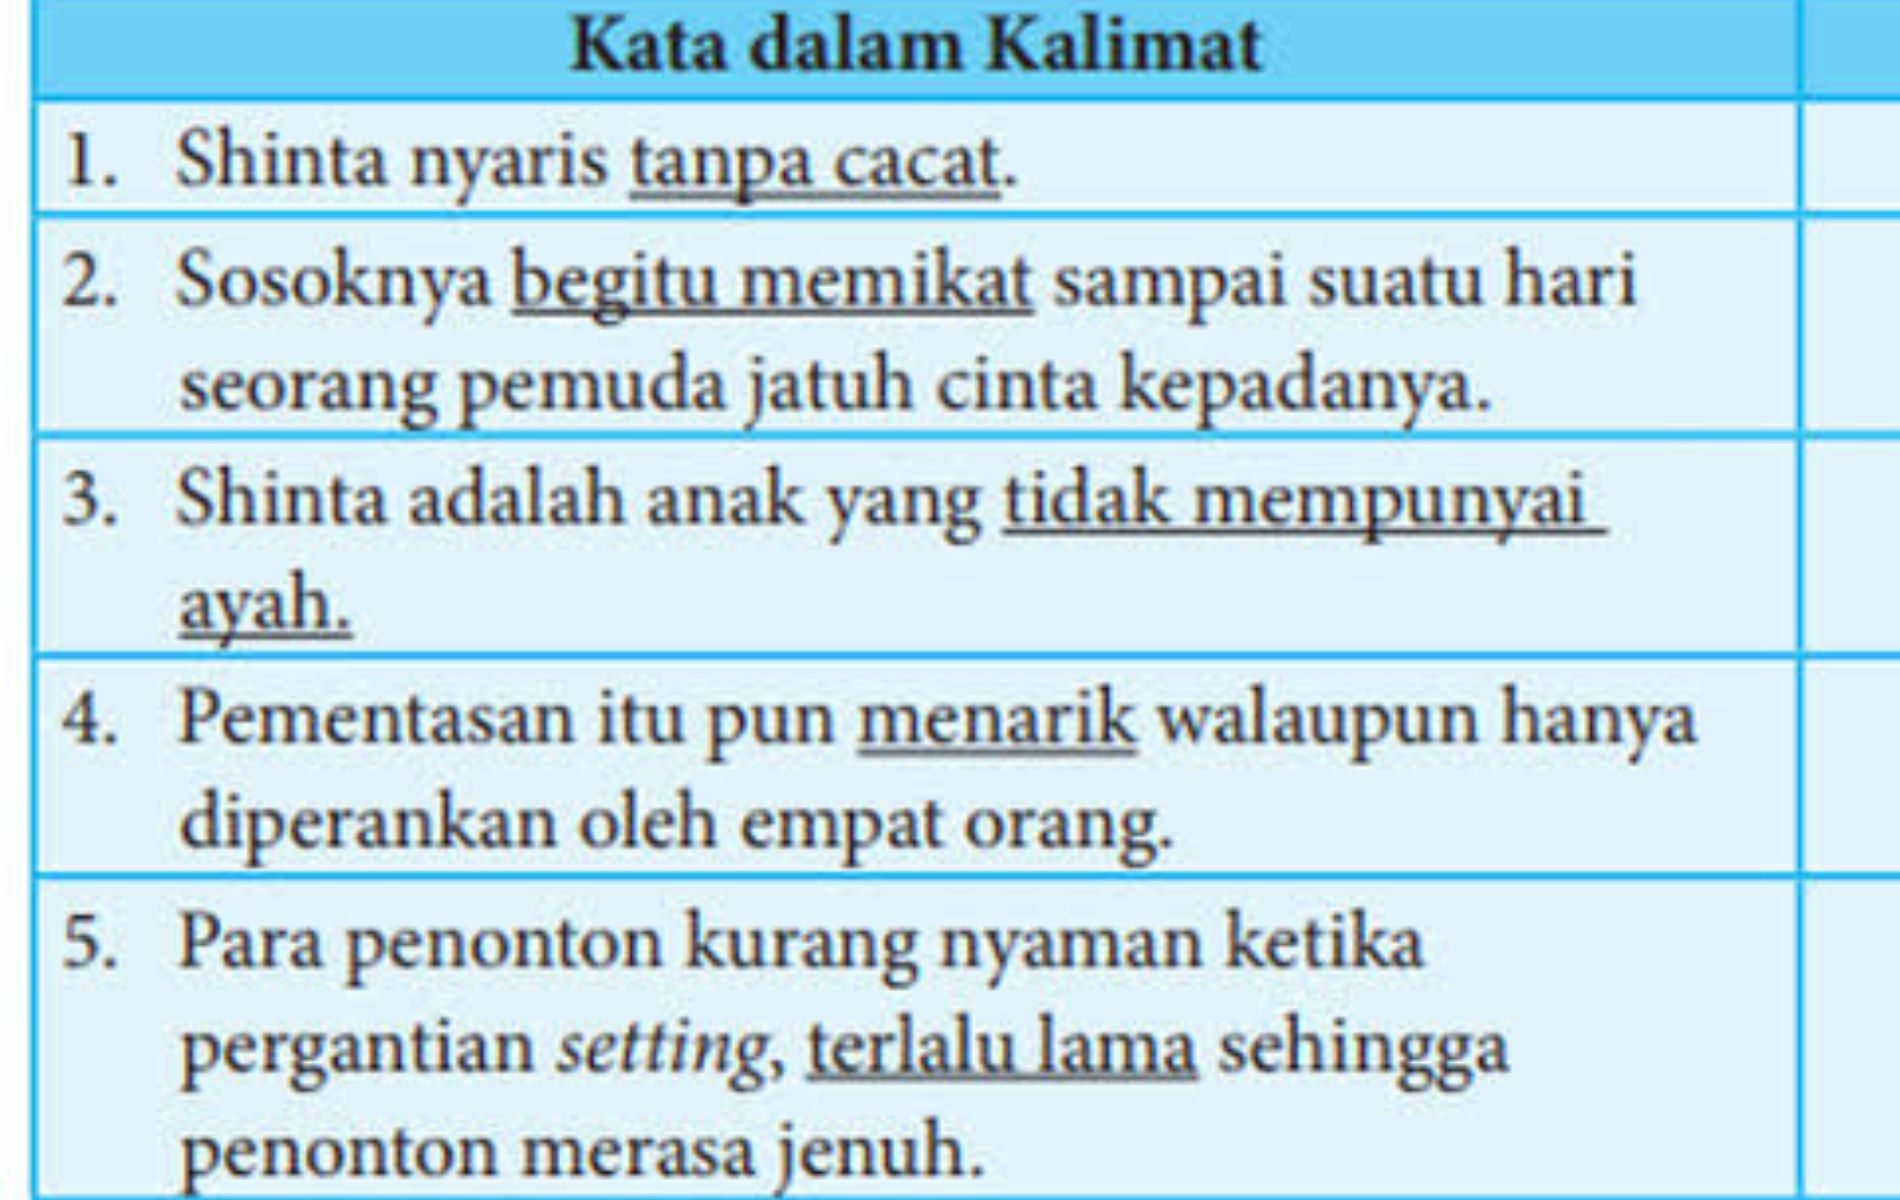 Soal dan kunci jawaban Bahasa Indonesia kelas 8 SMP halaman 164.